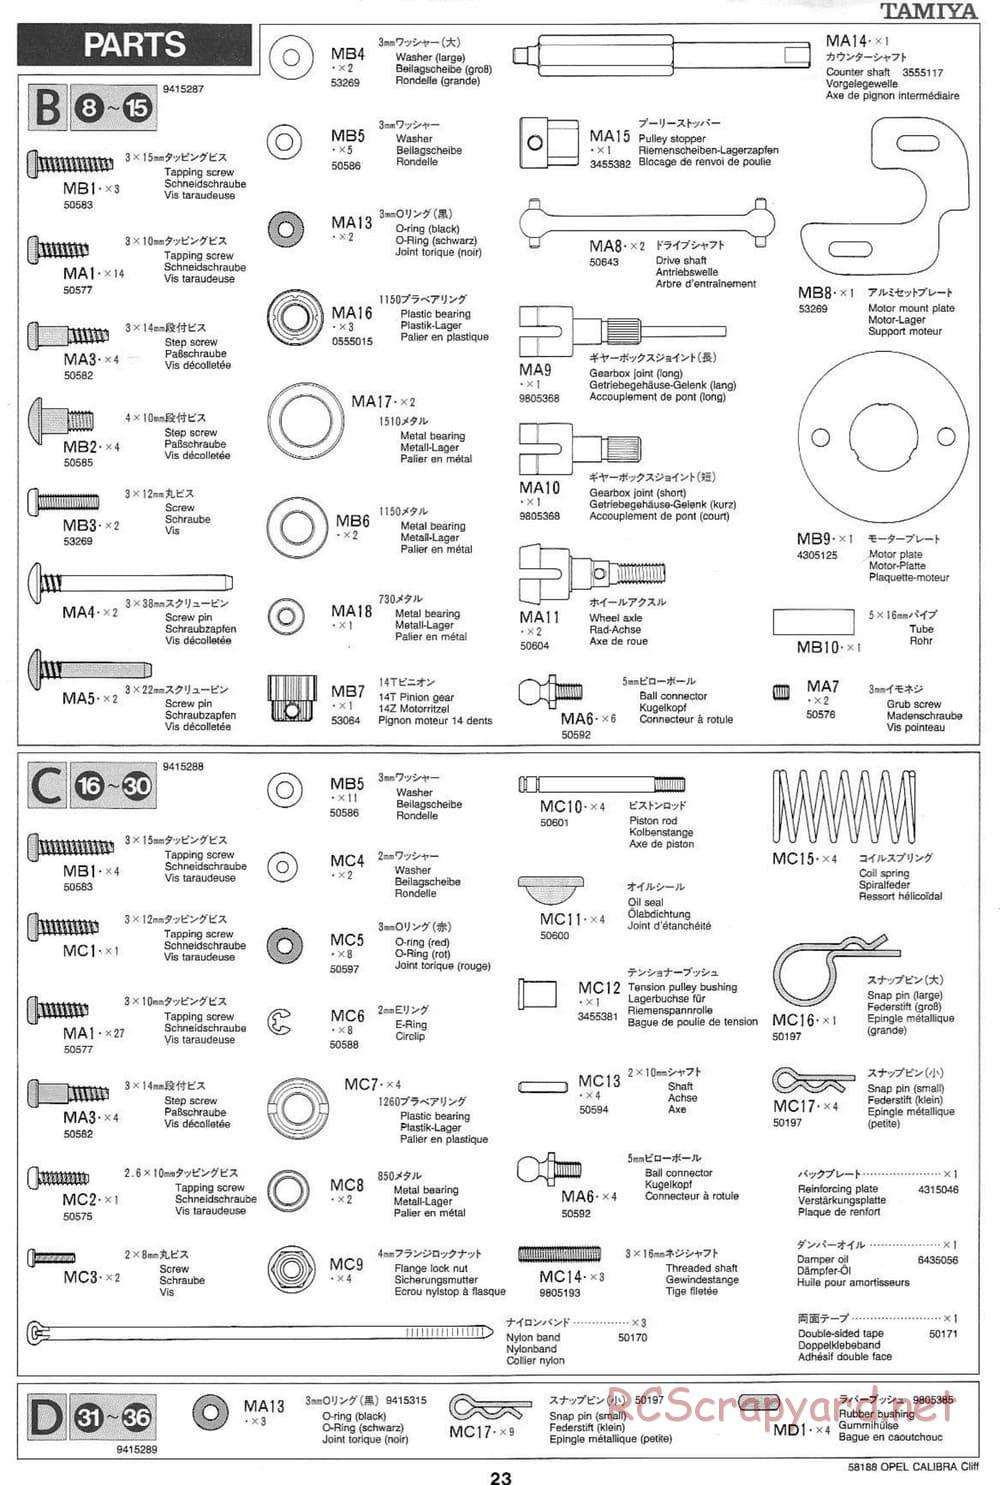 Tamiya - Opel Calibra Cliff - TA-03F Chassis - Manual - Page 23